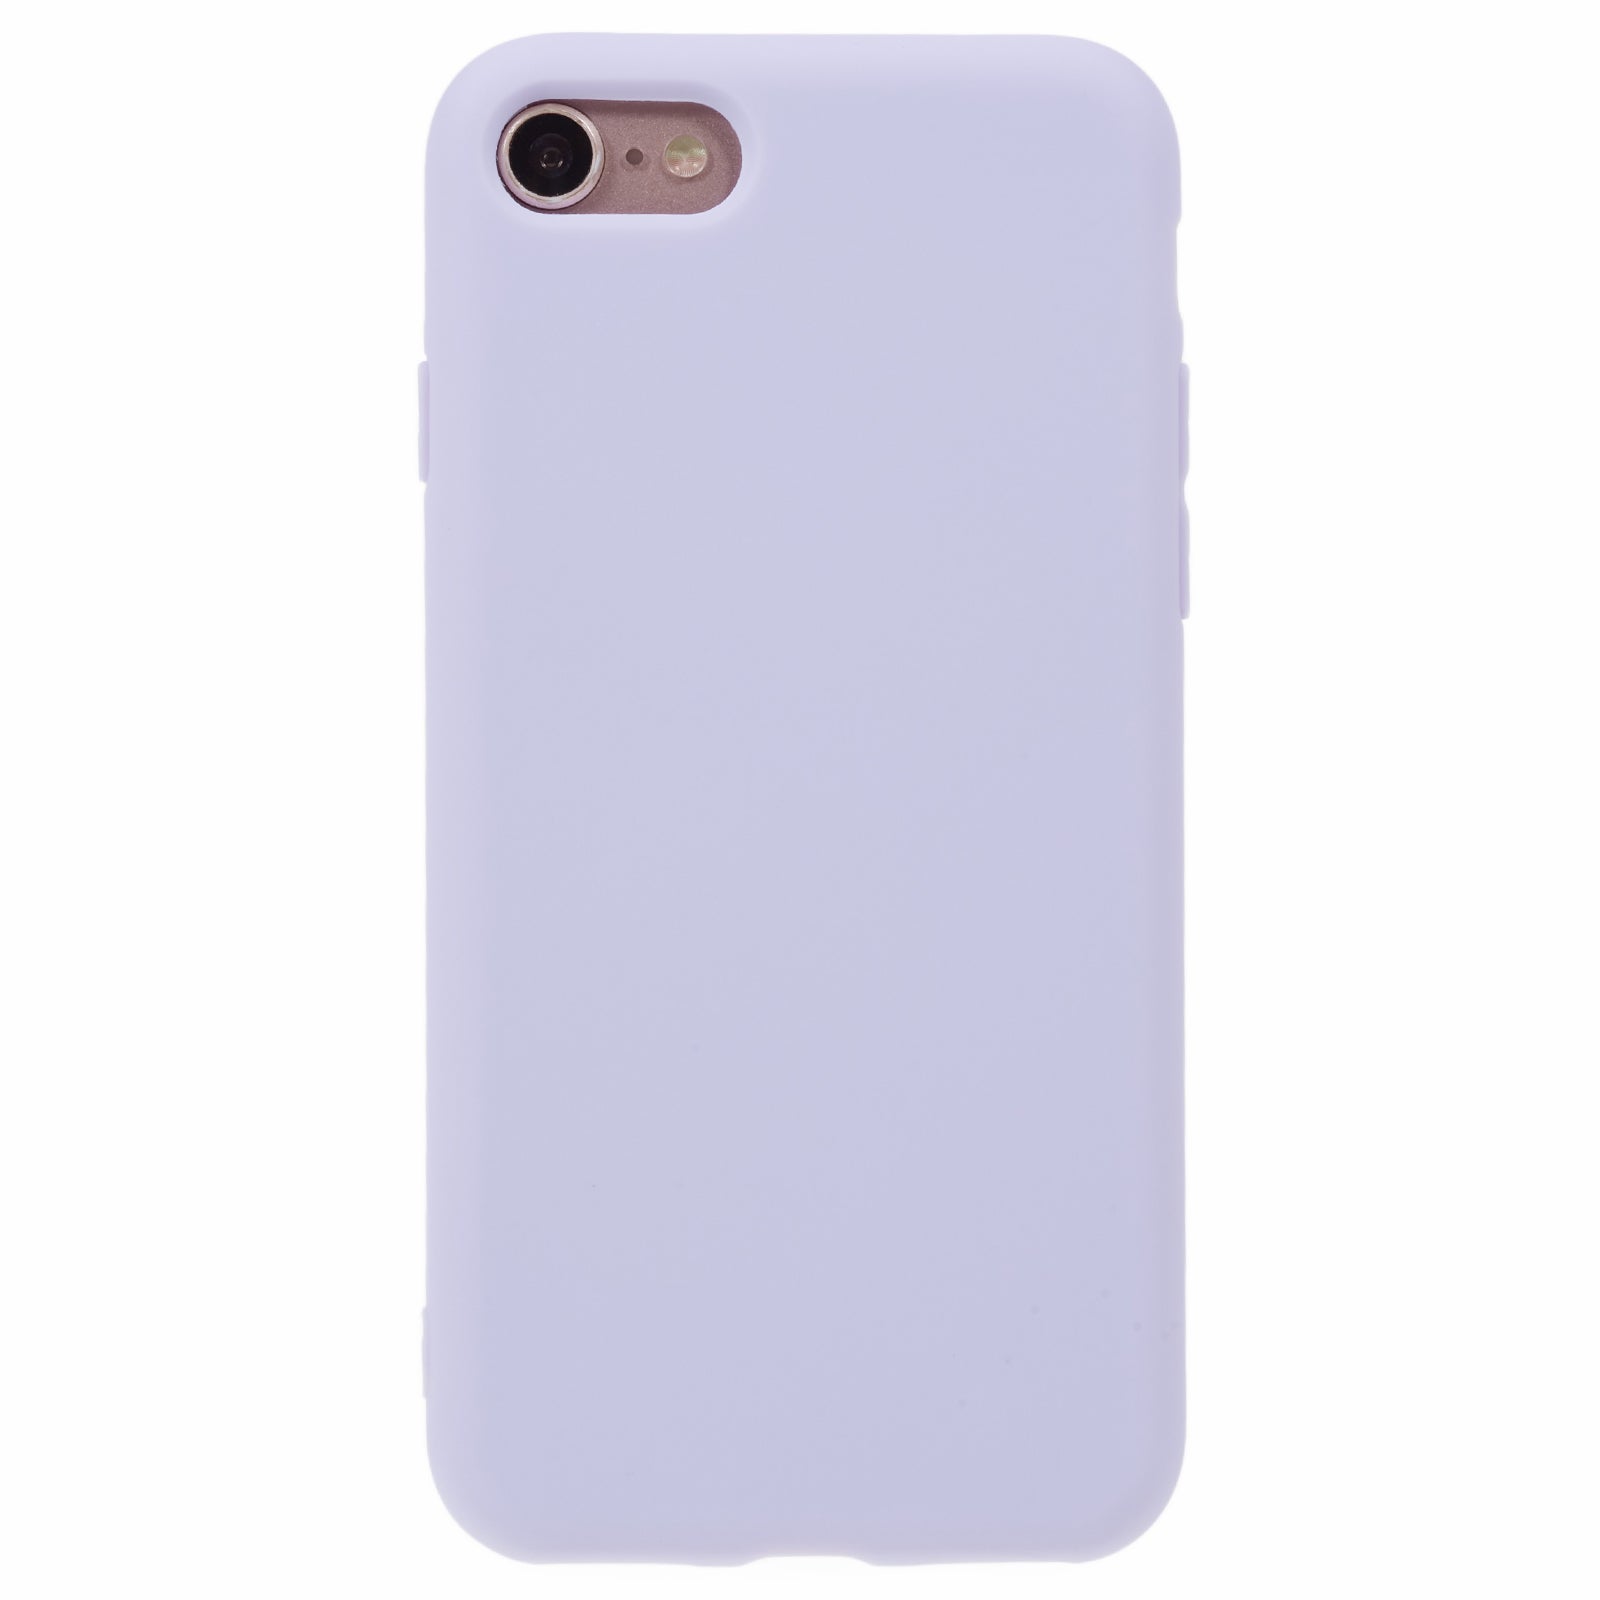 Uniqkart for iPhone 7 / 8 / SE (2020) / SE (2022) Candy Color Matte Phone Case Anti-scratch TPU Cover - Light Purple